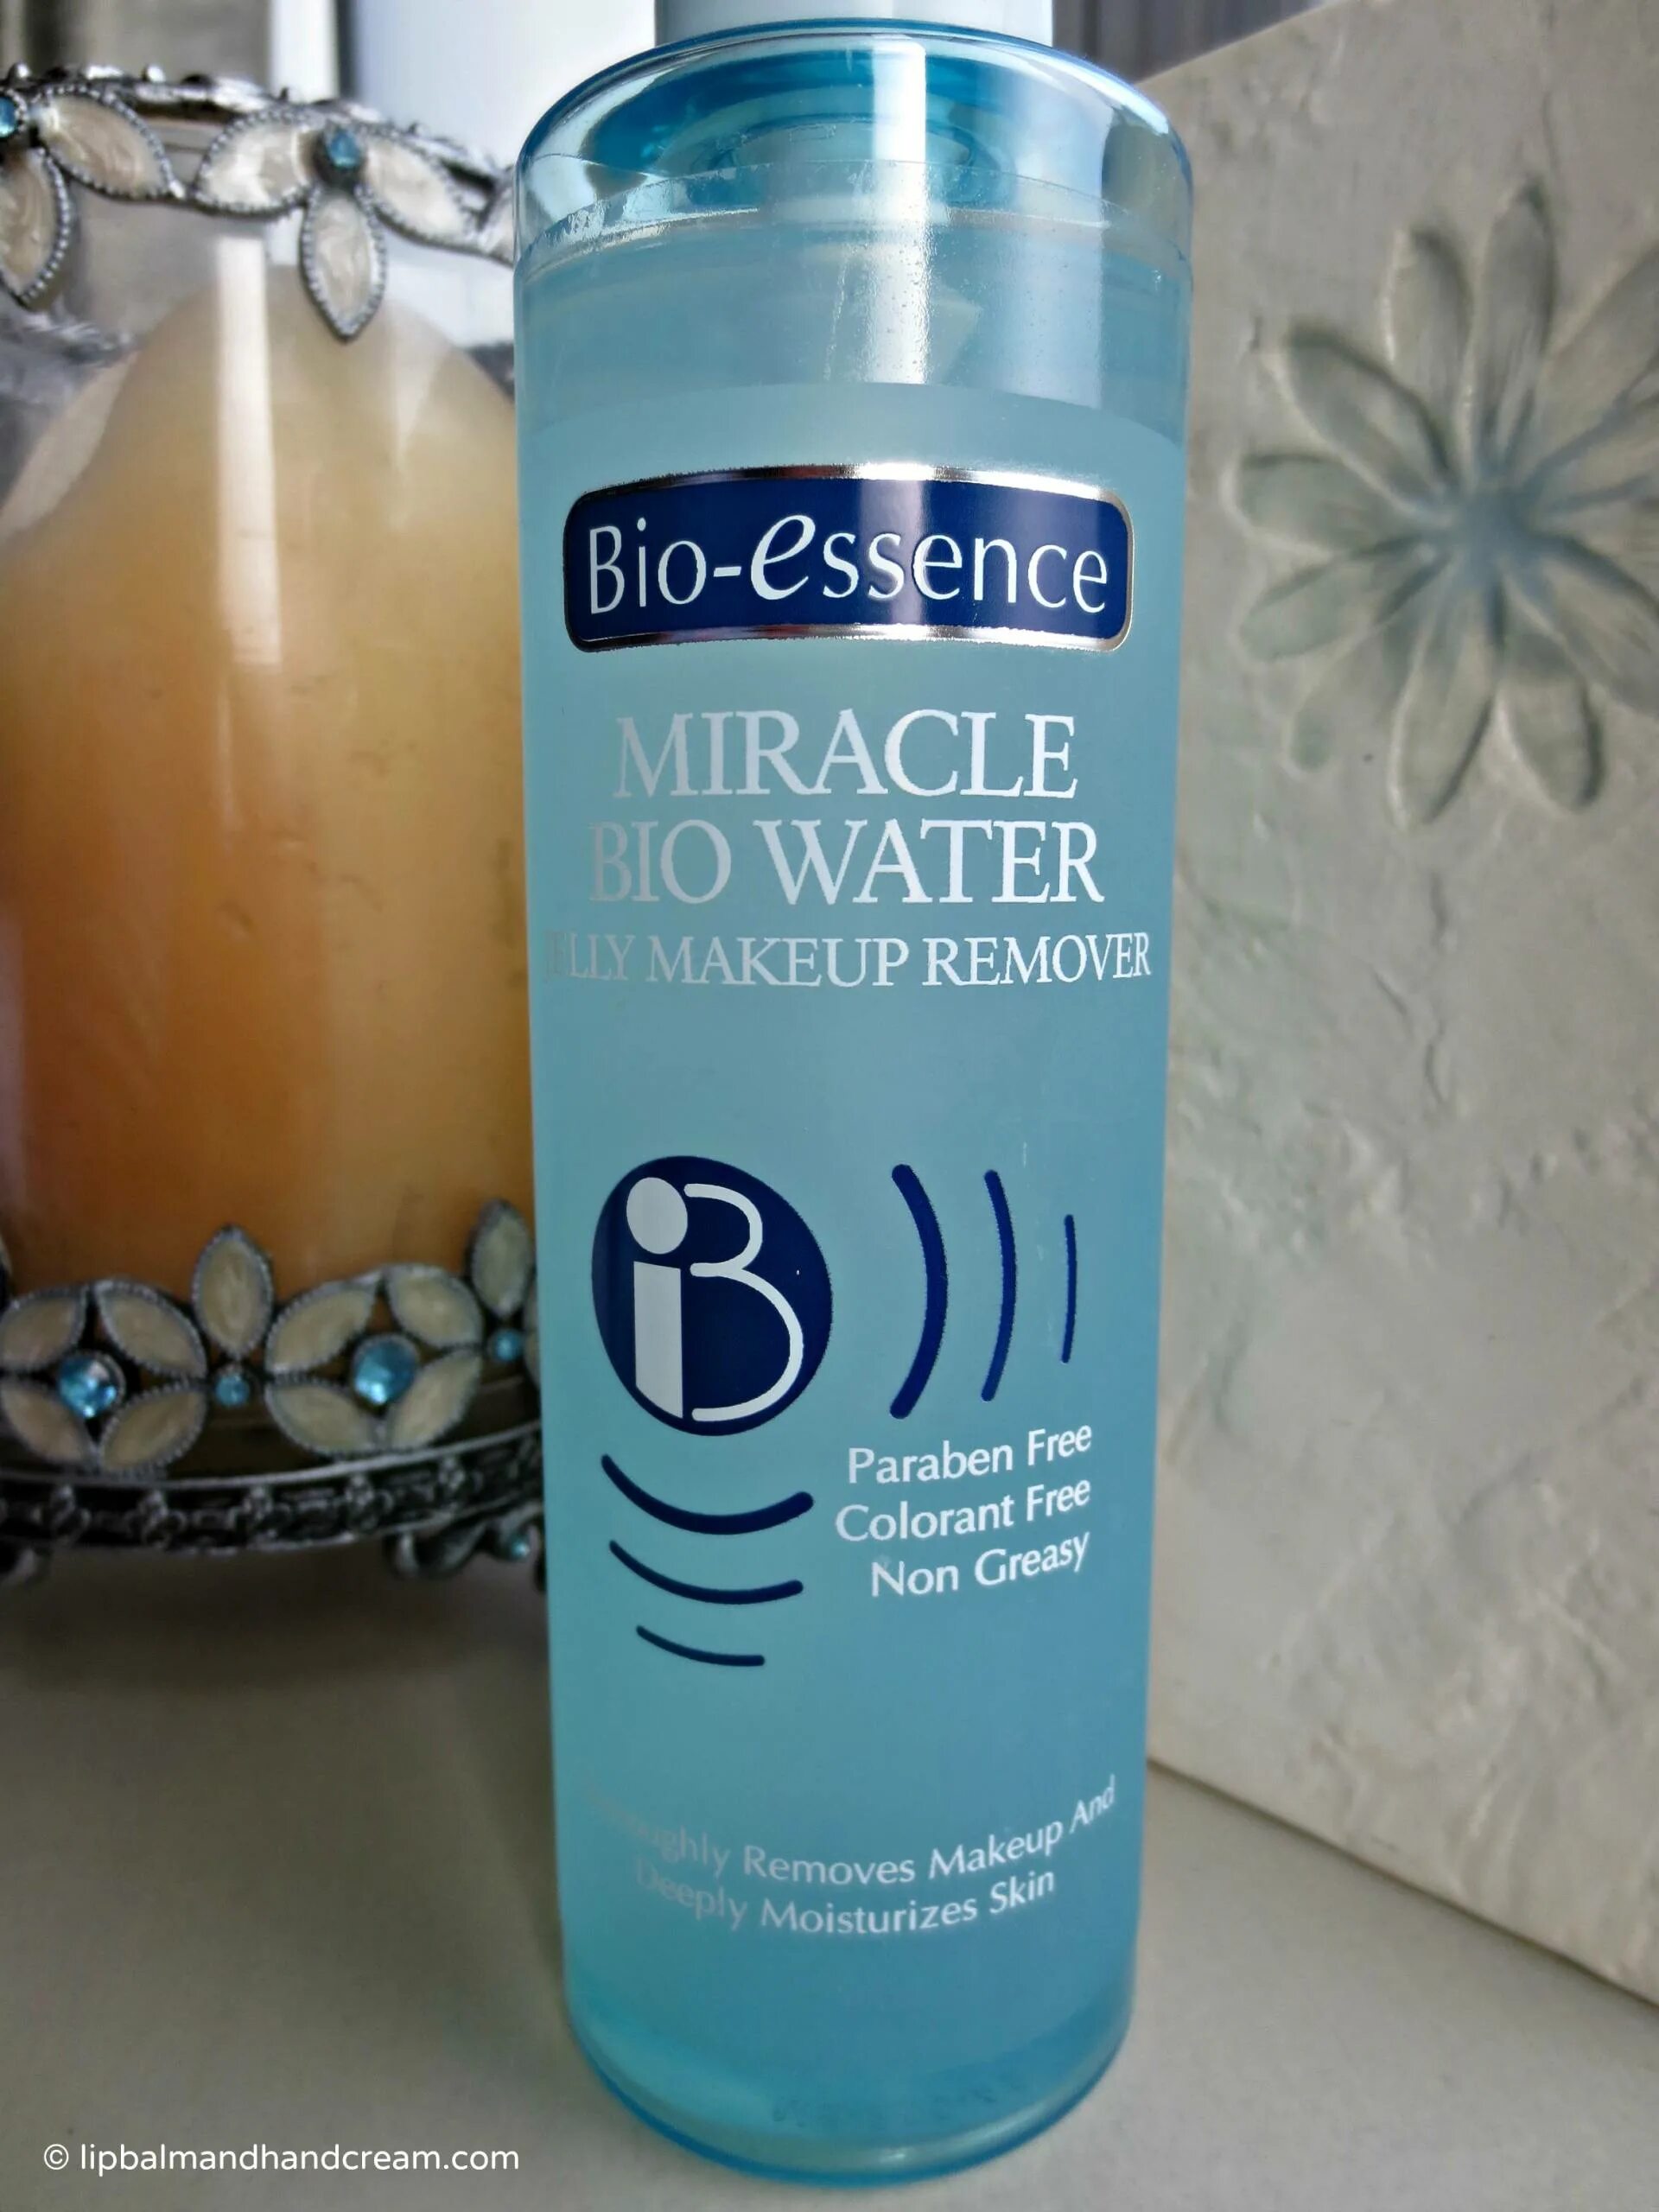 Эссенс био. Вода Bio. Питьевая вода миракле. Биос вода.